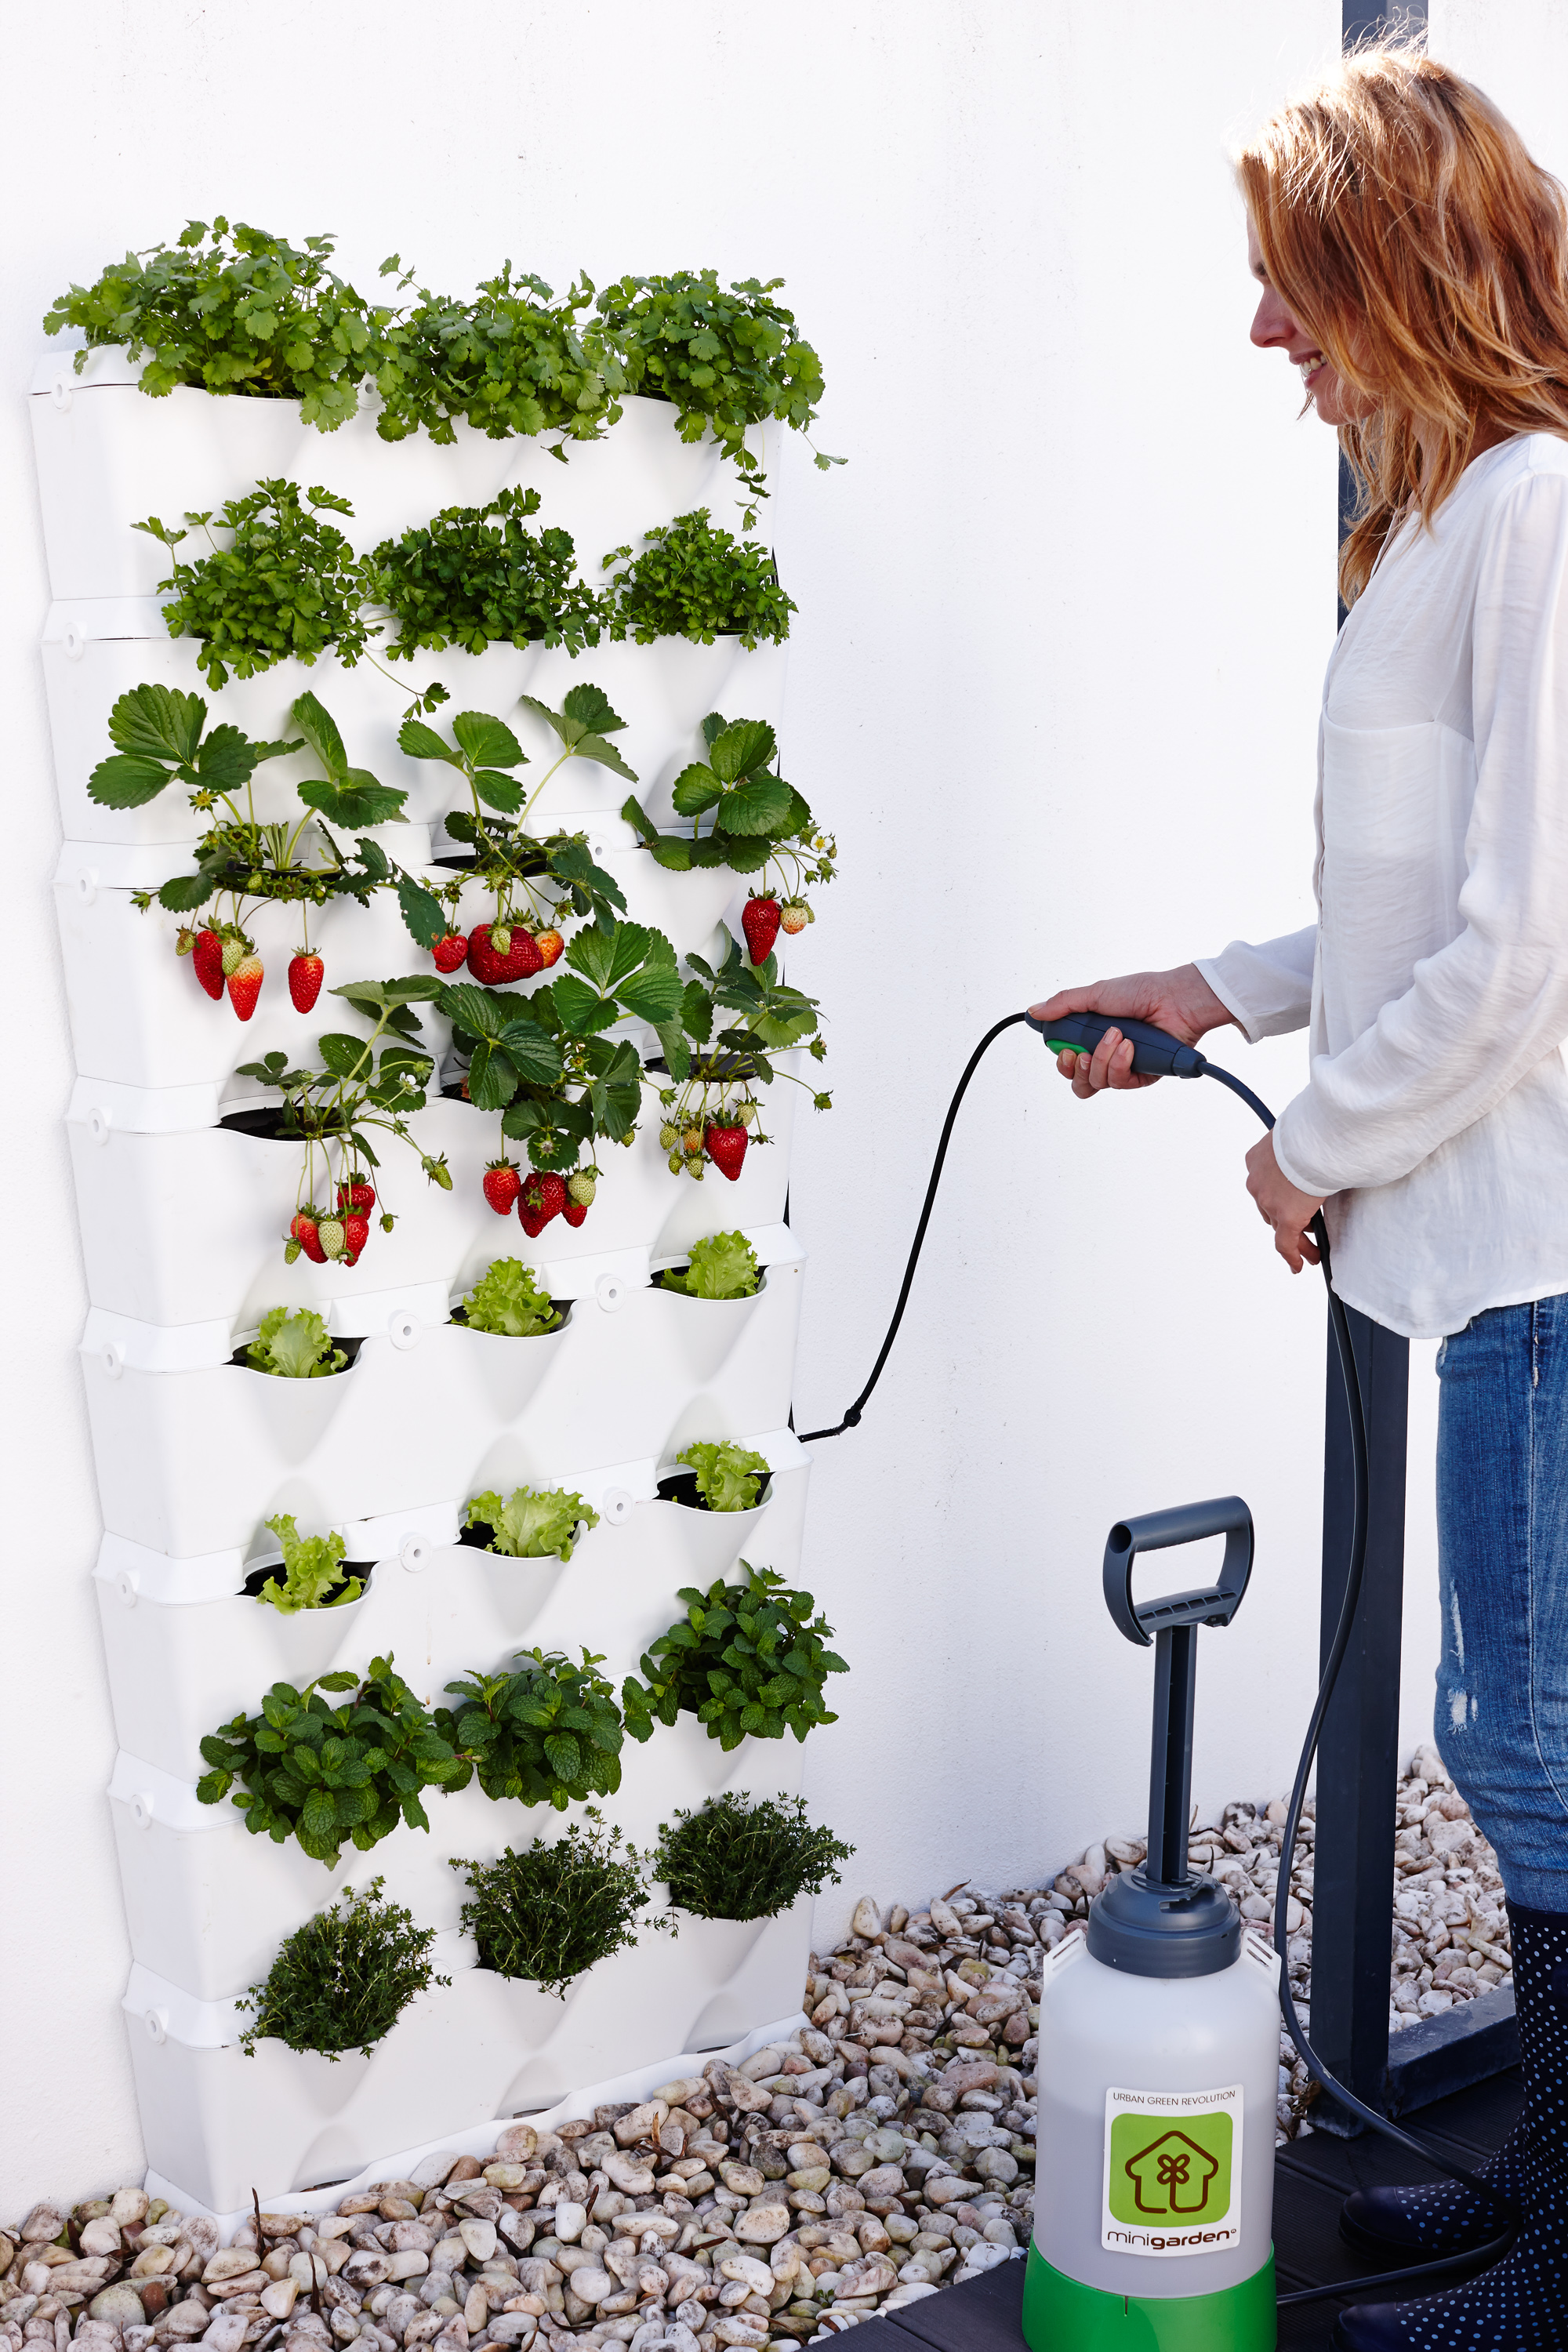 minigarden-outdoor-kitchen-garden